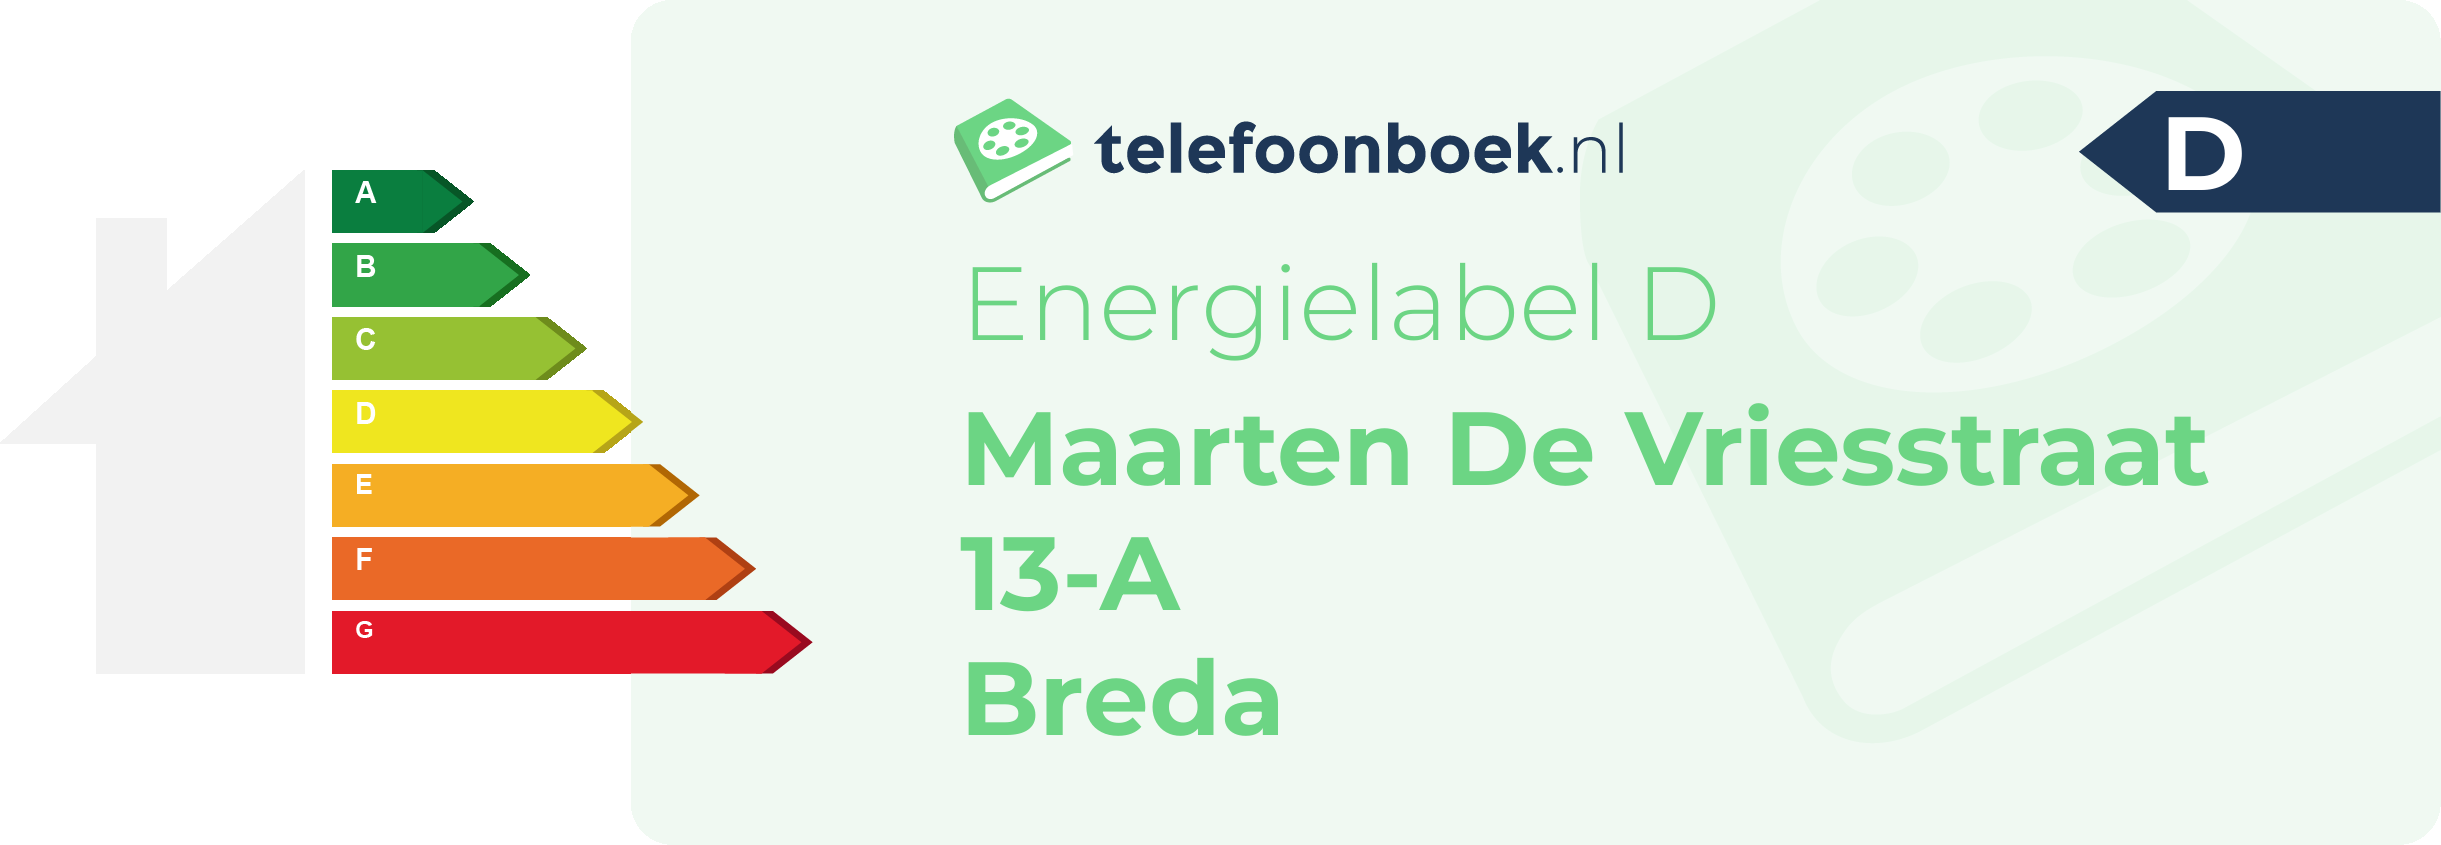 Energielabel Maarten De Vriesstraat 13-A Breda